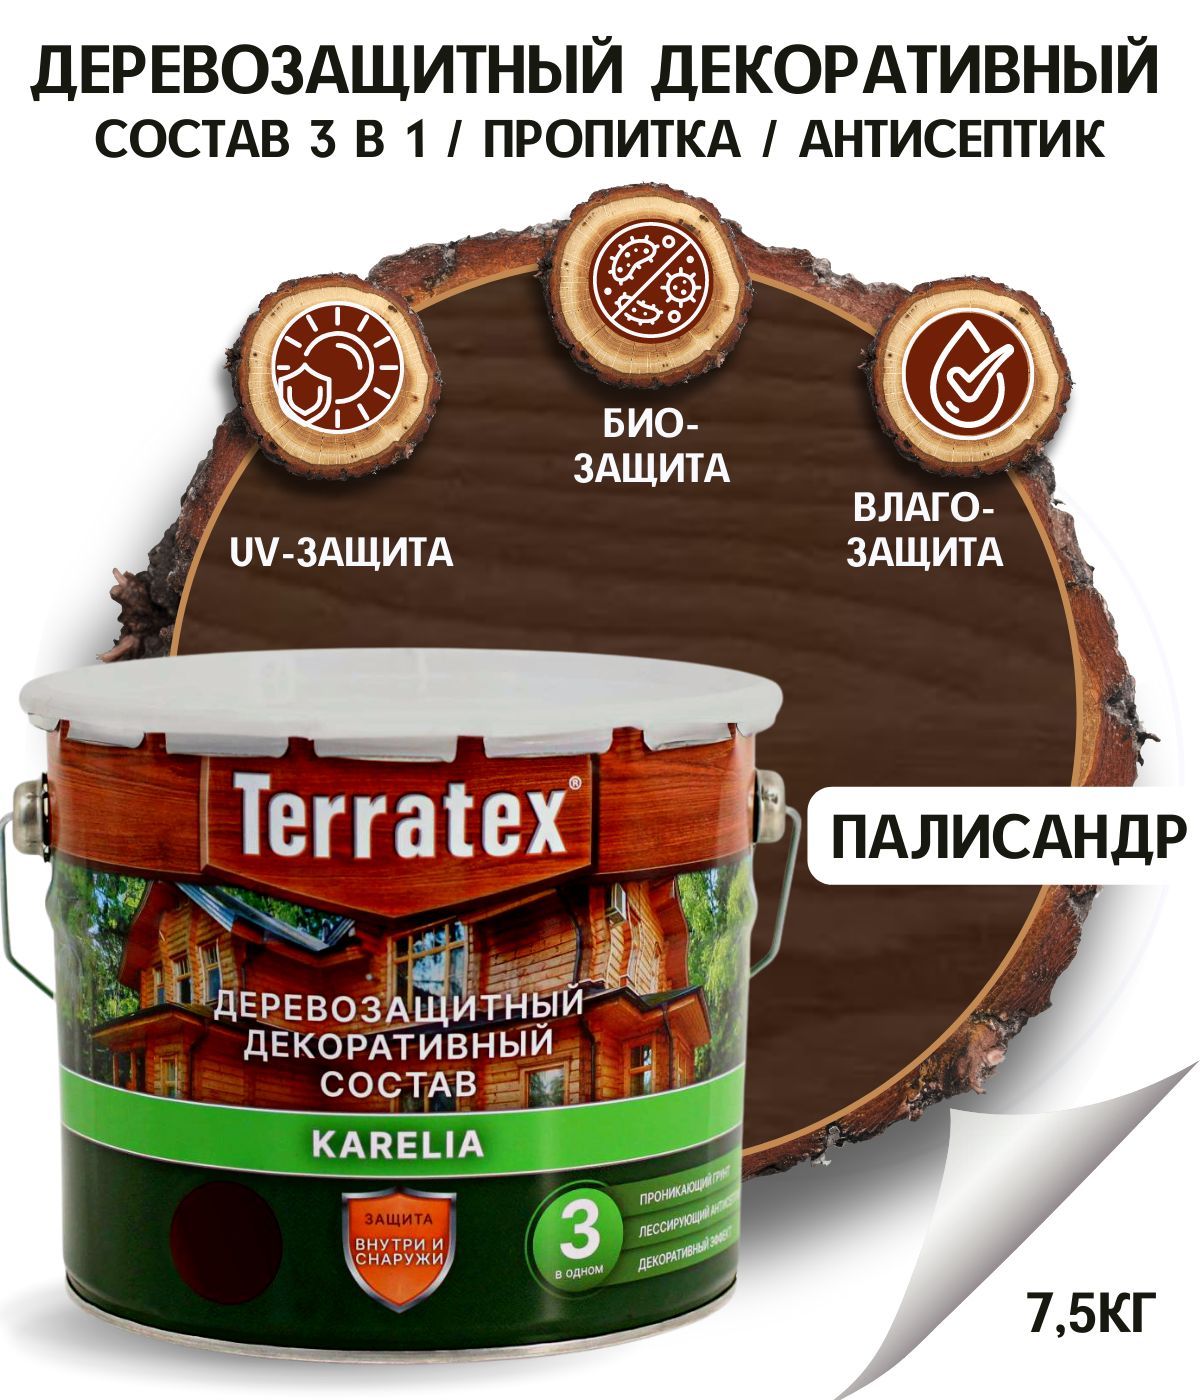 Деревозащитный декоративный состав Terratex палисандр 7,5 кг, 9 л